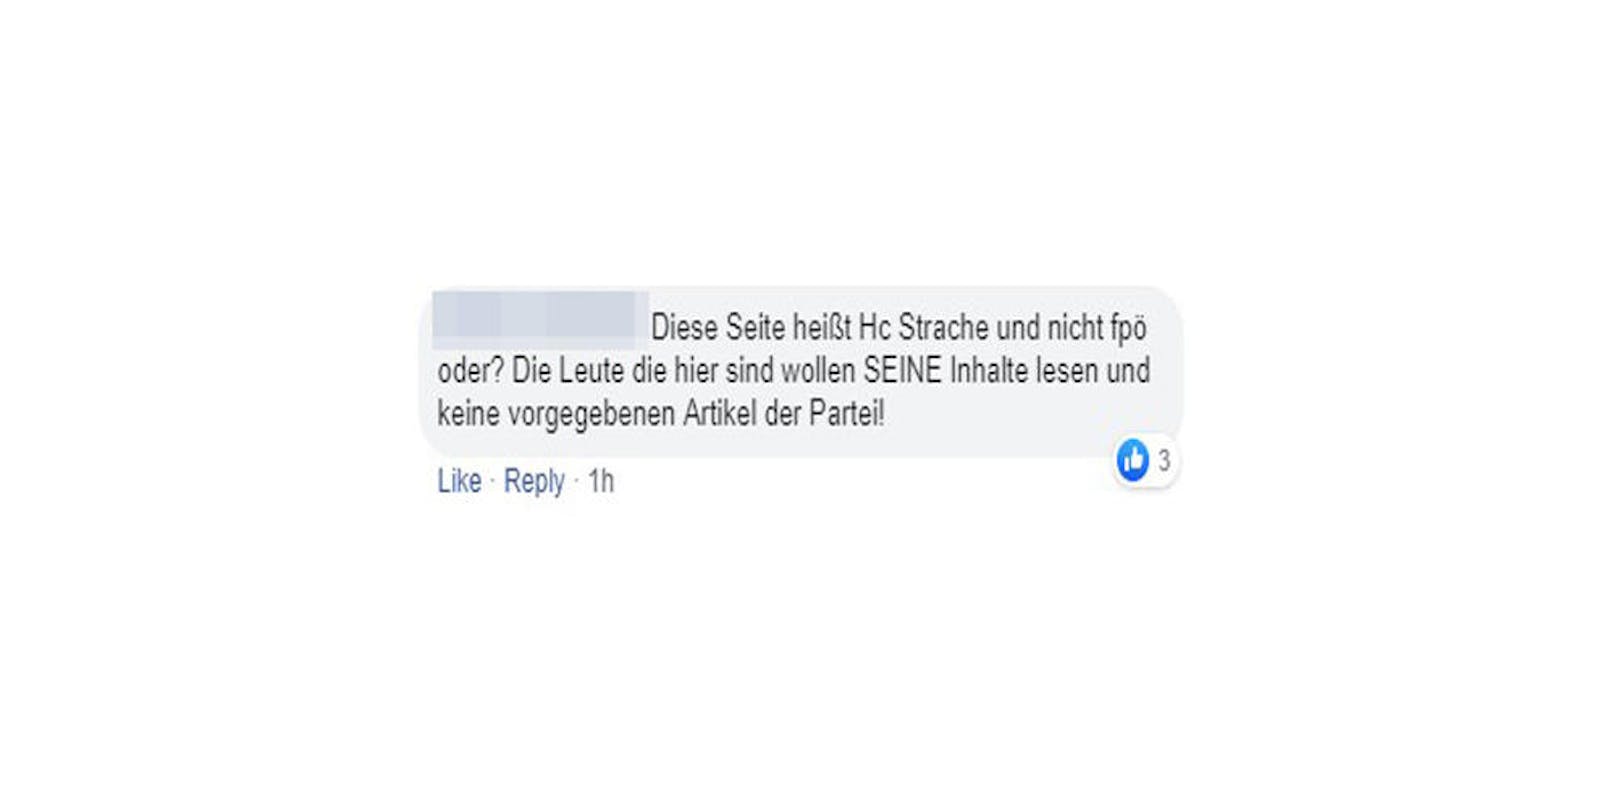 Ihren  Ärger begründen die User so: "Die Seite heißt HC Strache und nicht FPÖ oder? Die Leute die hier sind wollen SEINE Inhalte lesen und keine vorgegebenen Artikel der Partei!"